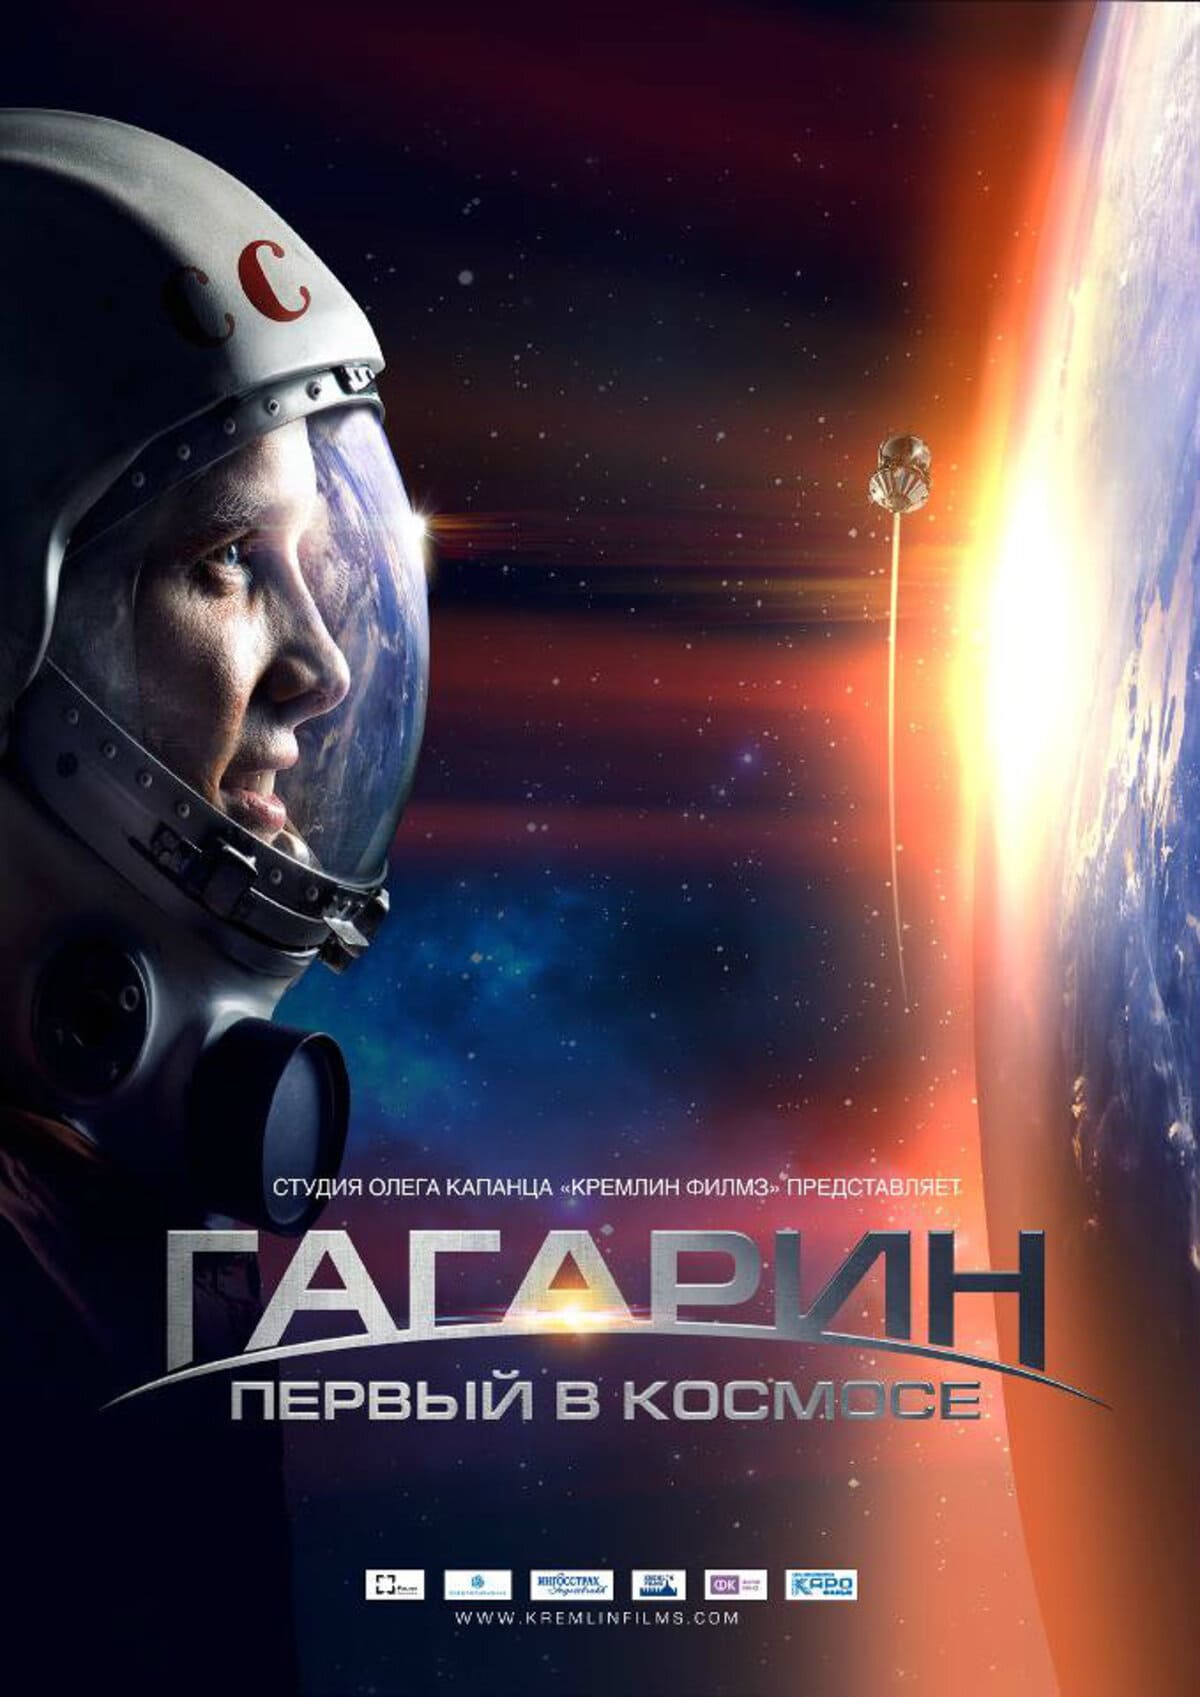 Гагарин первый в космосе 6. Гагарин первый в космосе 2013. Гагарин первый в космосе Постер.